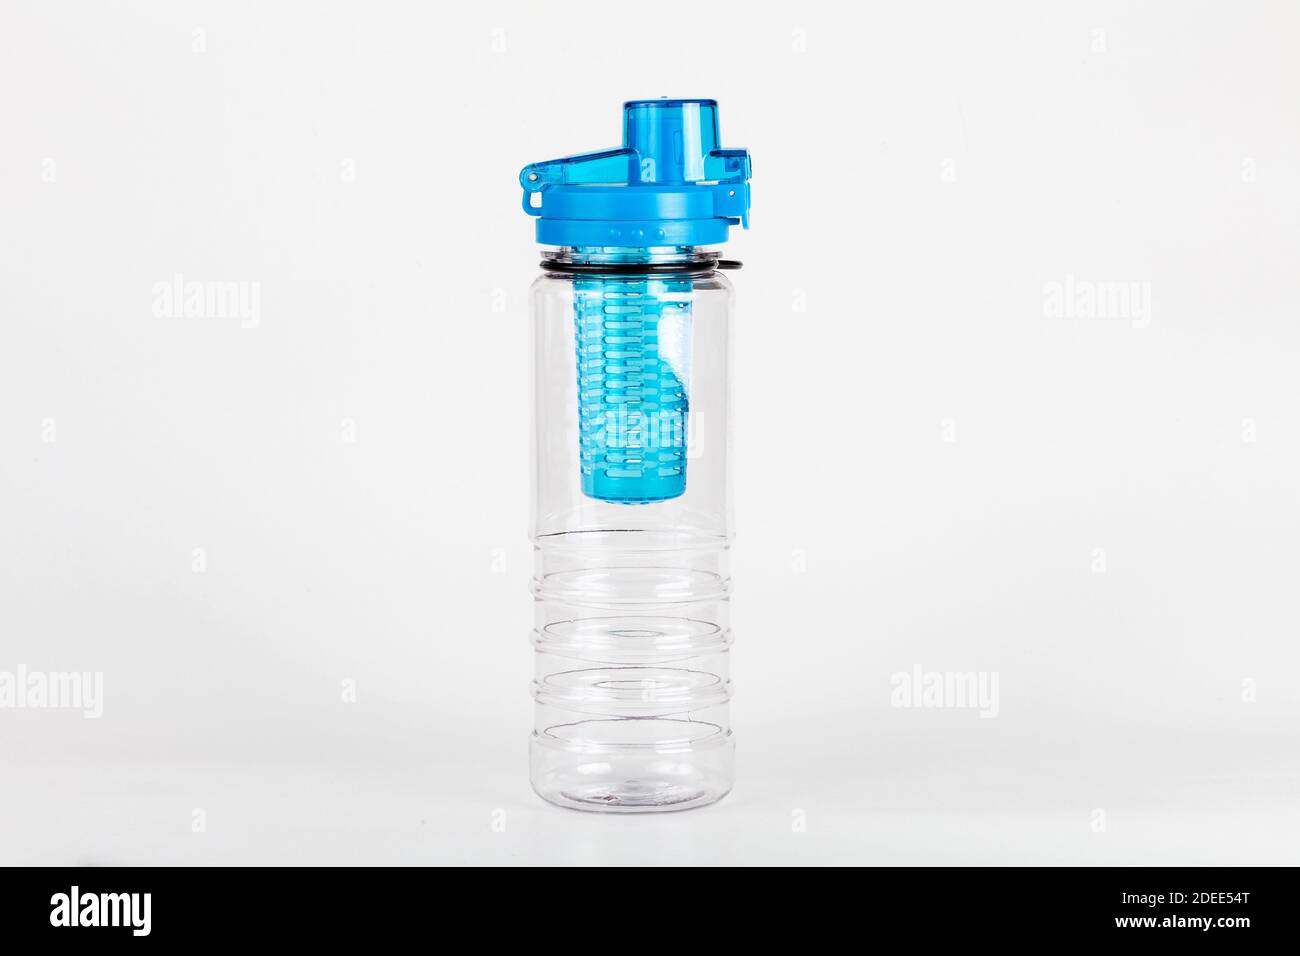 Simple botella de agua deportiva de plástico duro azul vacío simple con infusador de frutas aislado, un solo objeto. Disparo de estudio de botella reutilizable en blanco. Hidratación Foto de stock